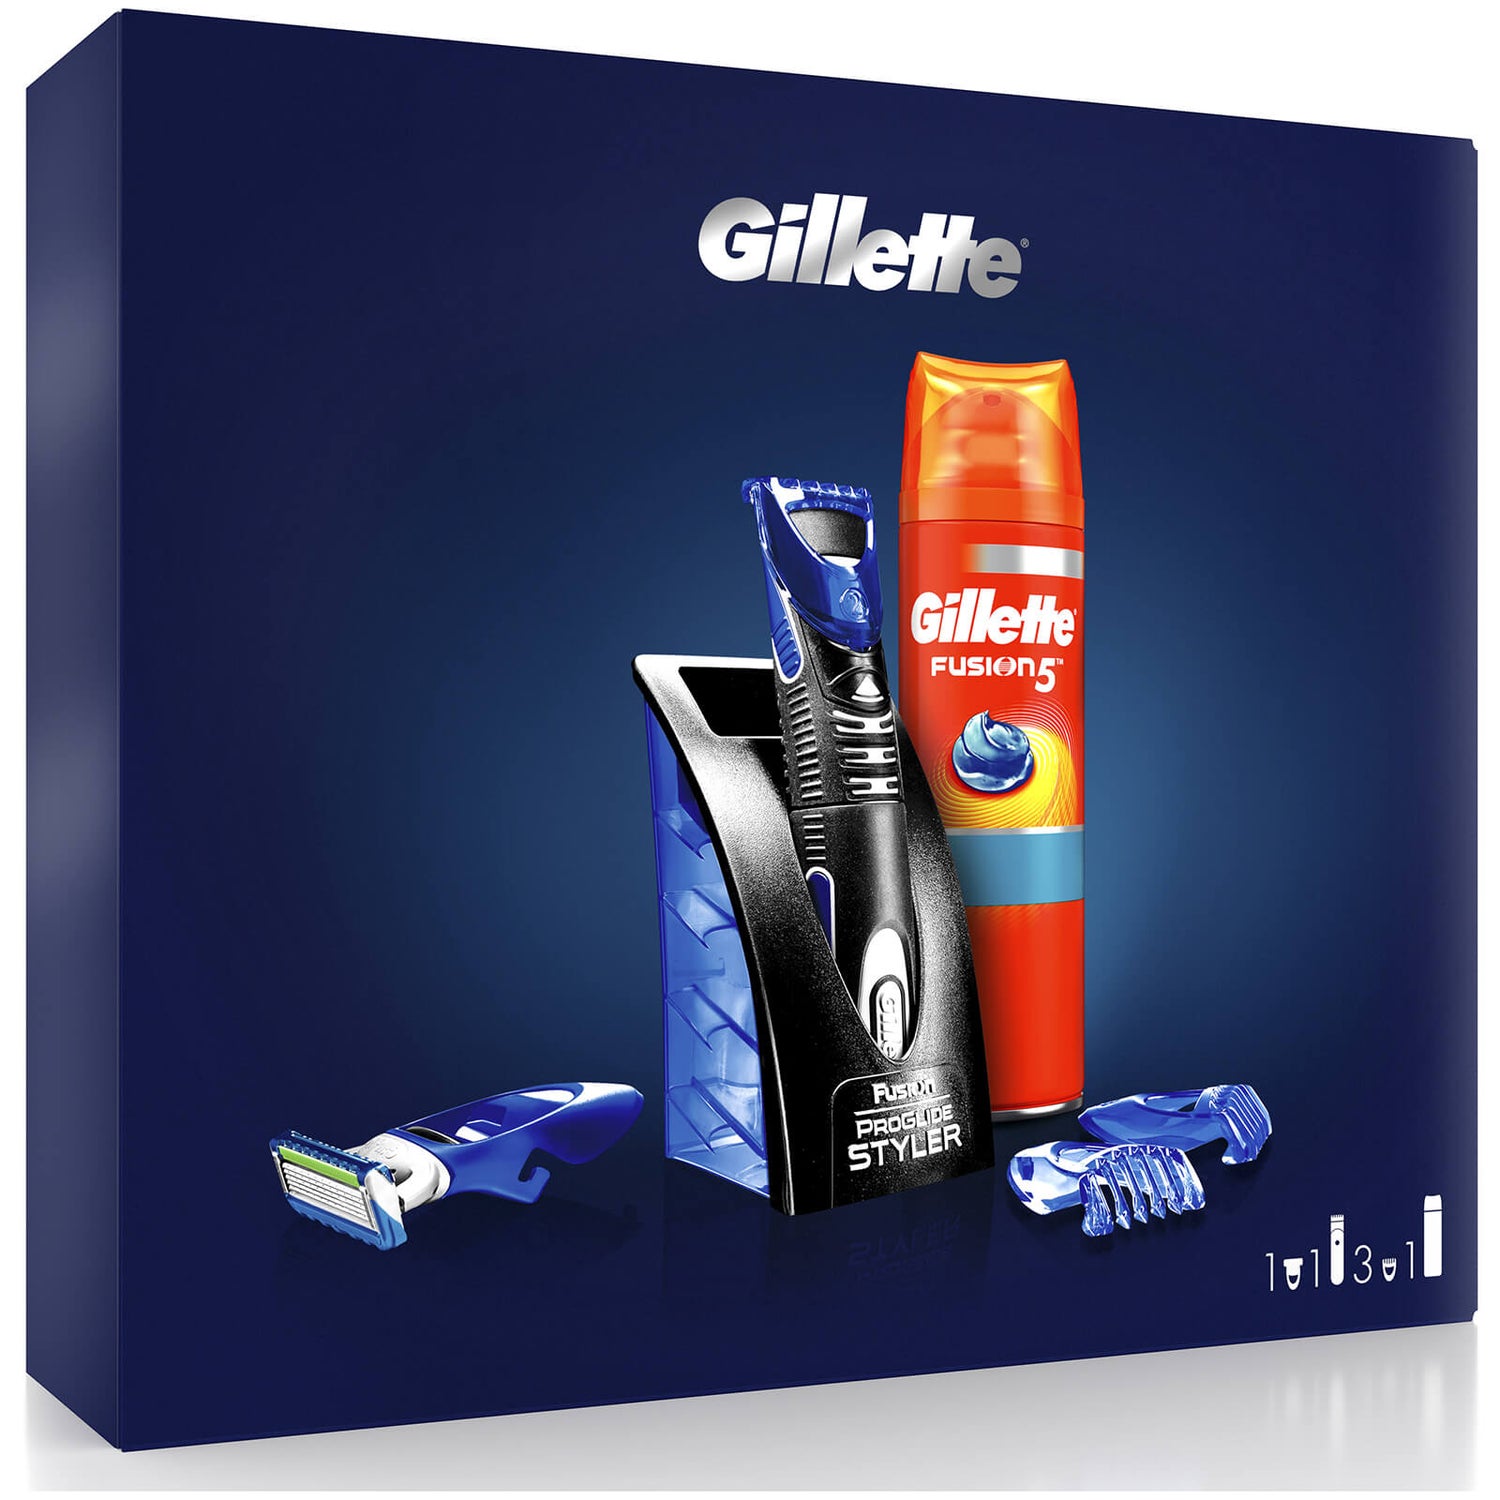 Gillette All Purpose Styler Gift Set